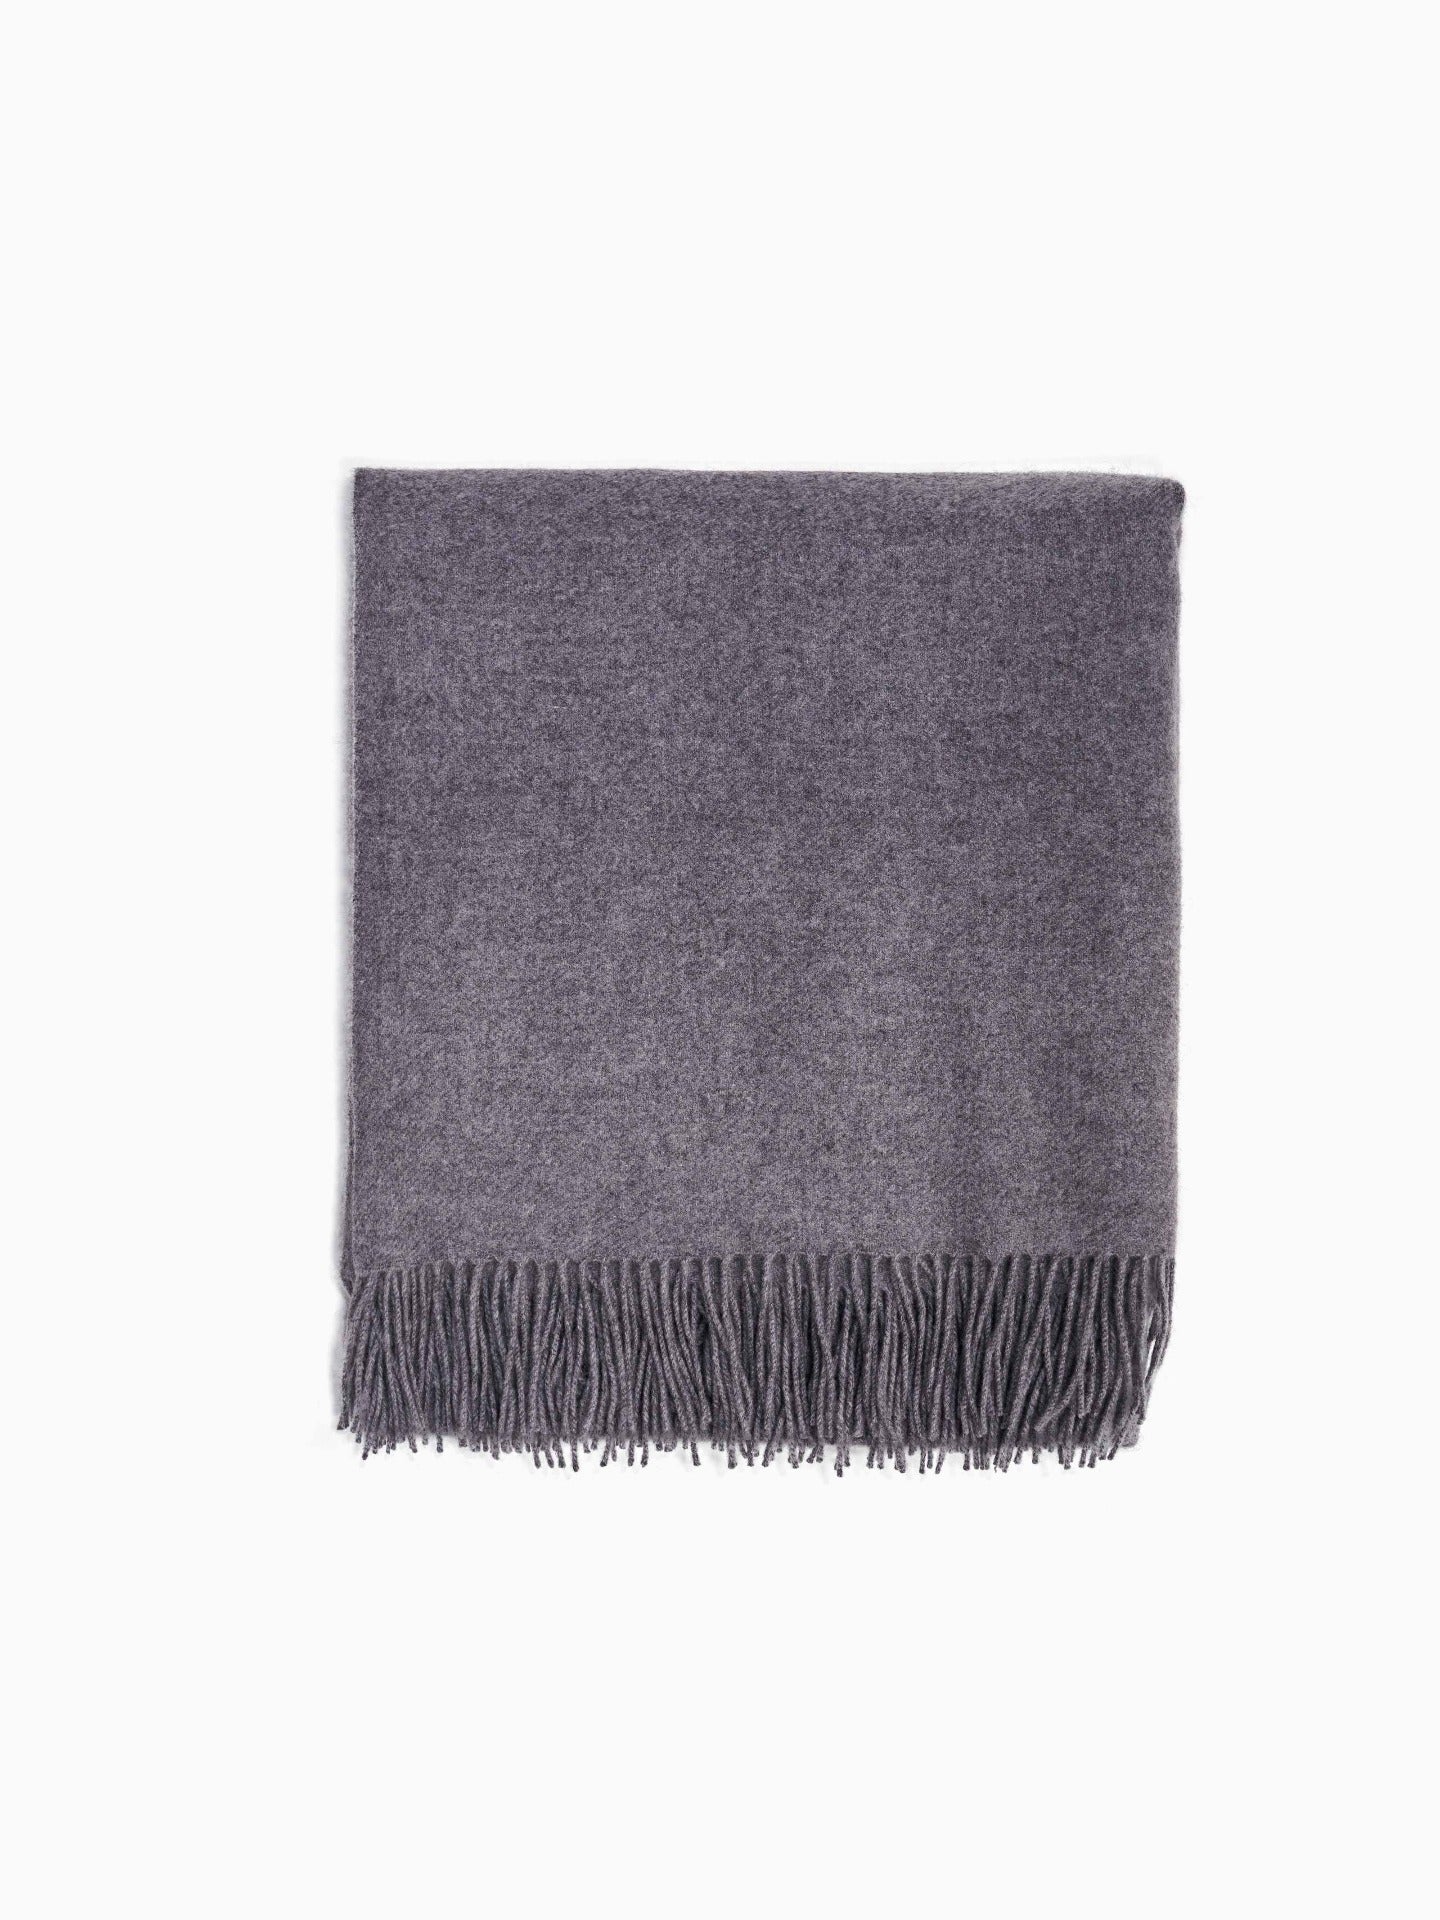 Unisex Cashmere Medium Blanket With Fringe Dim Gray - Gobi Cashmere